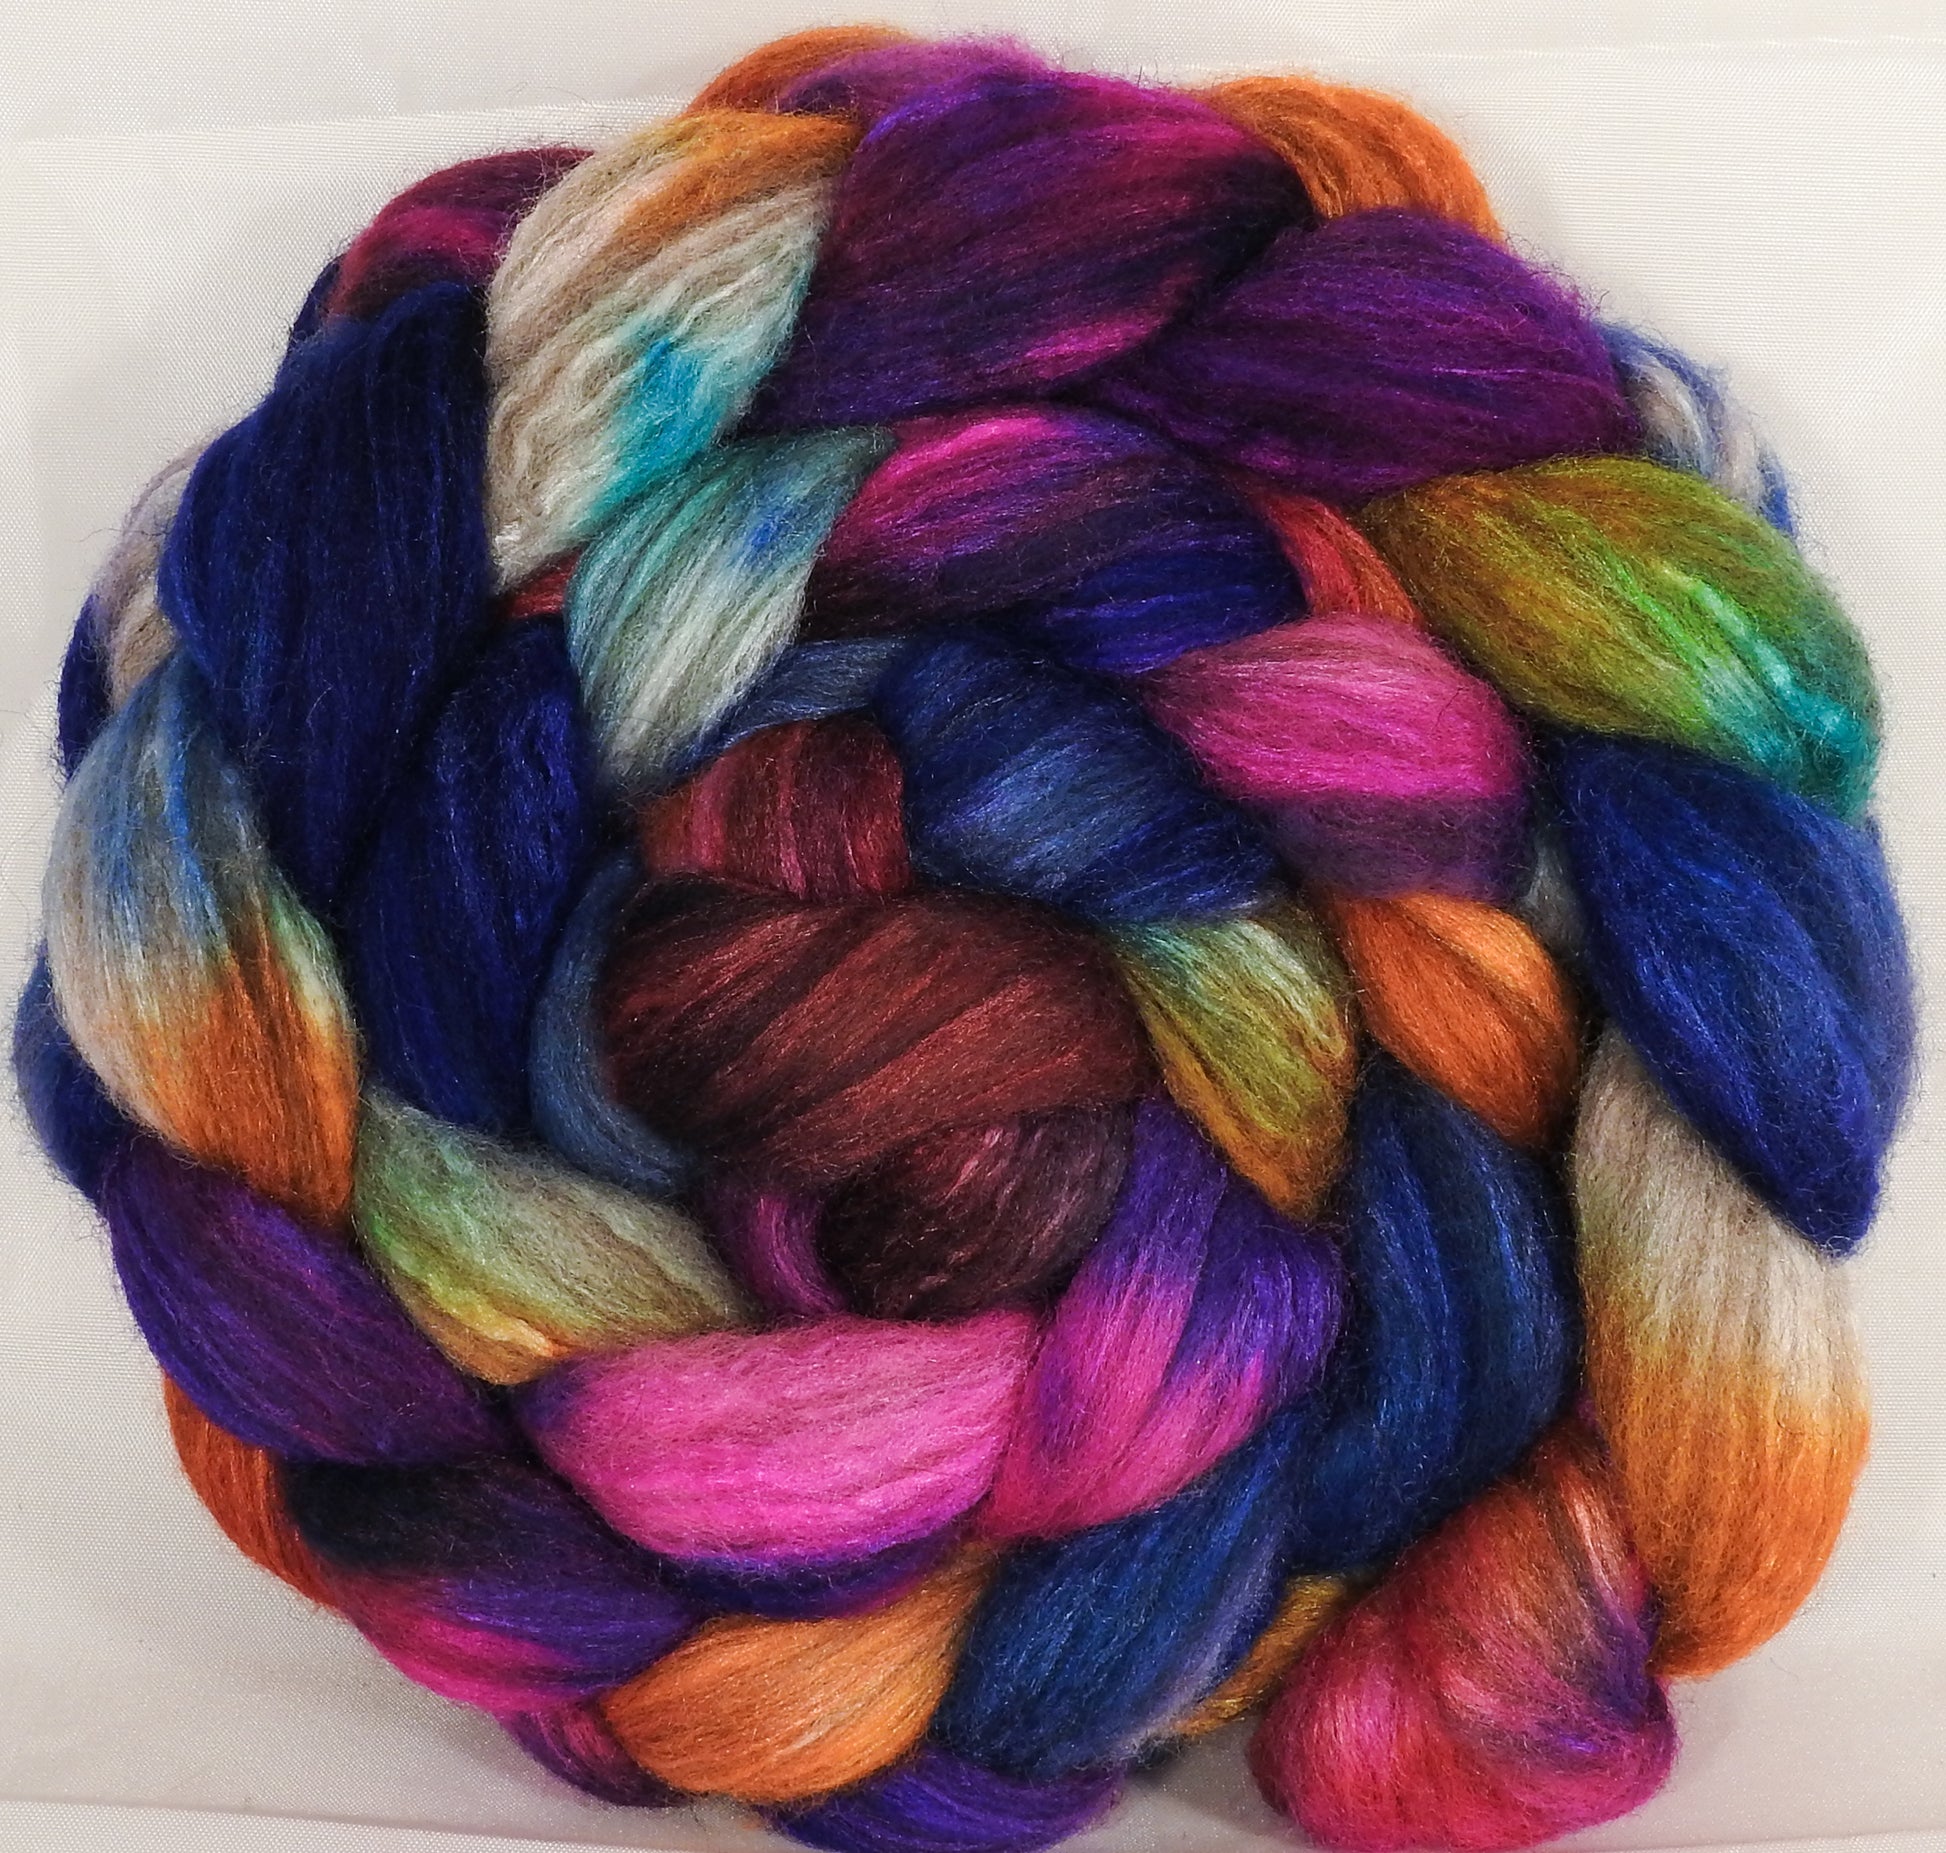 Mixed UK Bfl/ Tussah Silk  (75/25) -Tie-Dye - 6.5 oz. - Inglenook Fibers